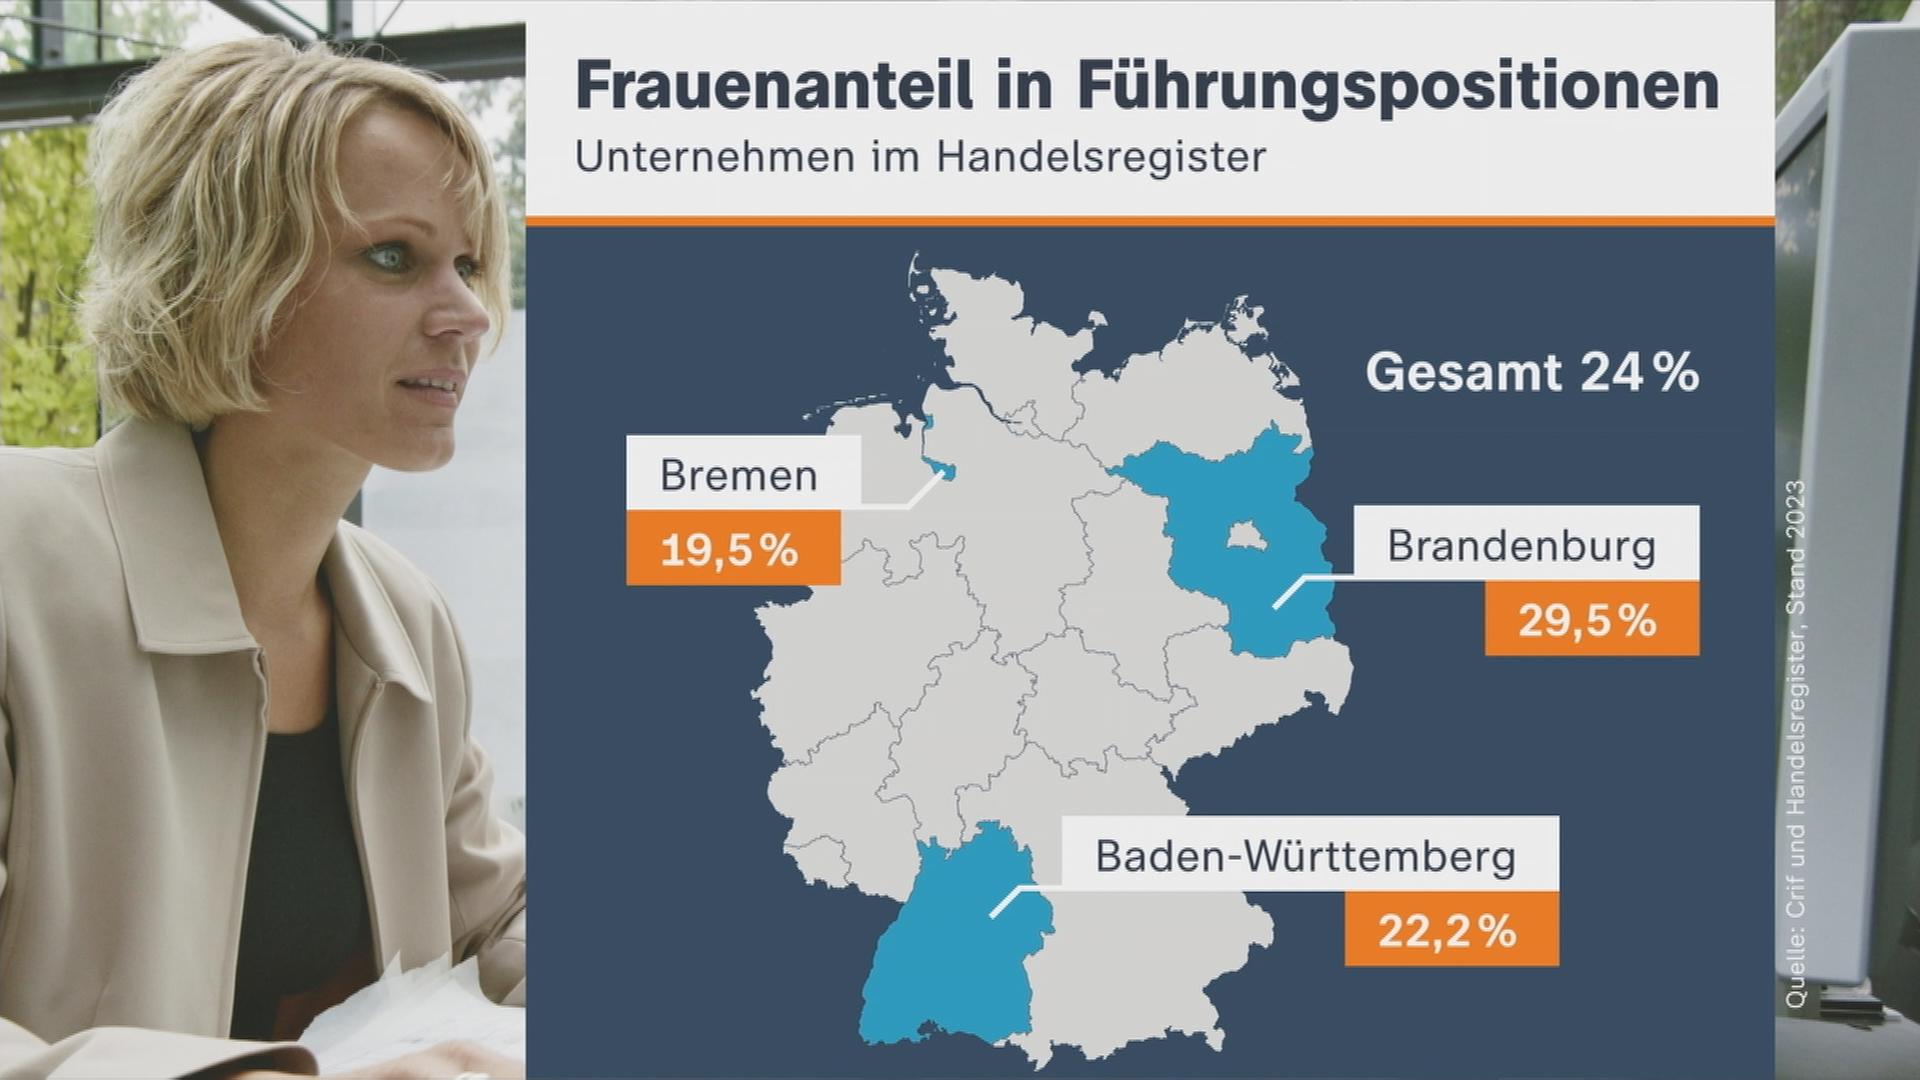 Auf dem Bild ist eine Grafik zu sehen, wie sich der Frauenanteil in Führungspositionen deutschlandweit verteilt.